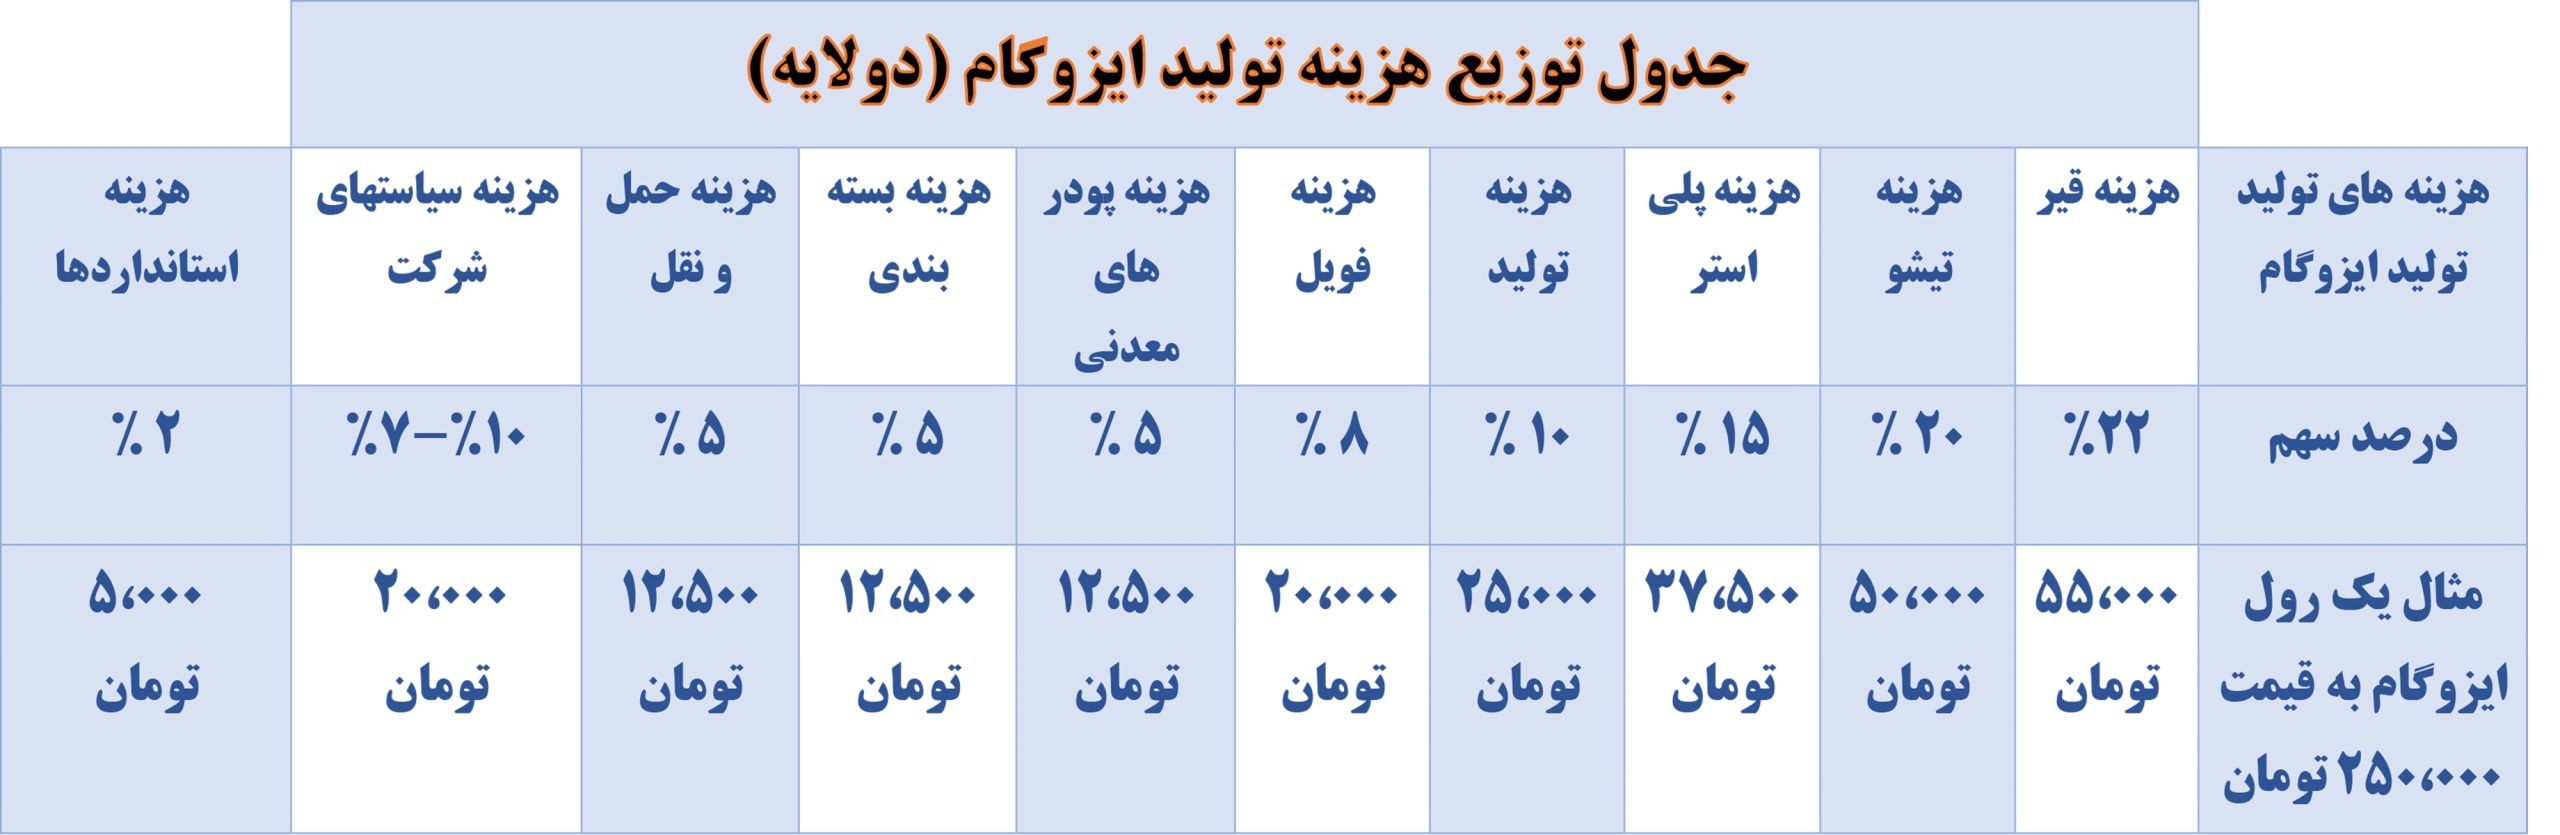 جدول توزیع قیمت ایزوگام - هزینه تولید ایزوگام و قیمت تمام شده ایزوگام